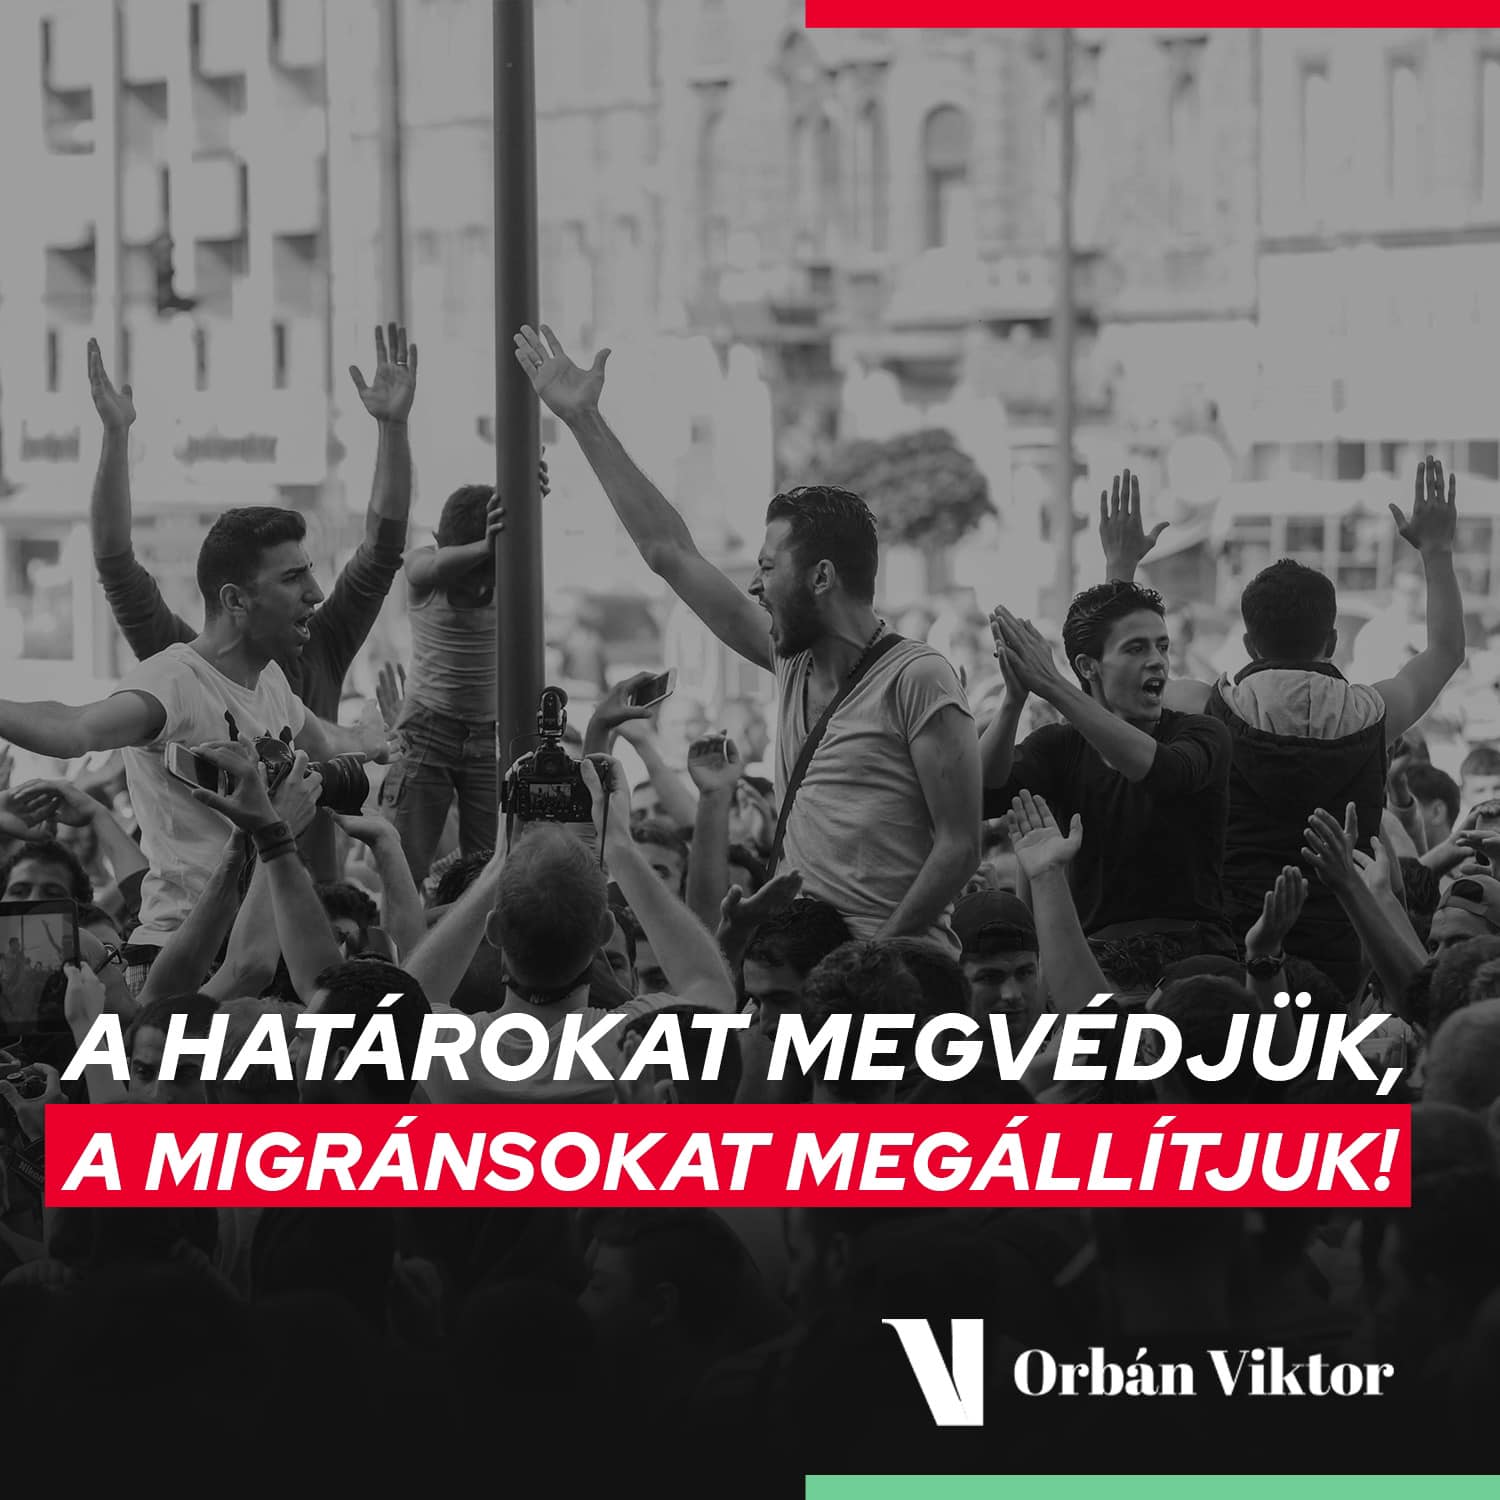 Orban Viktor Facebook